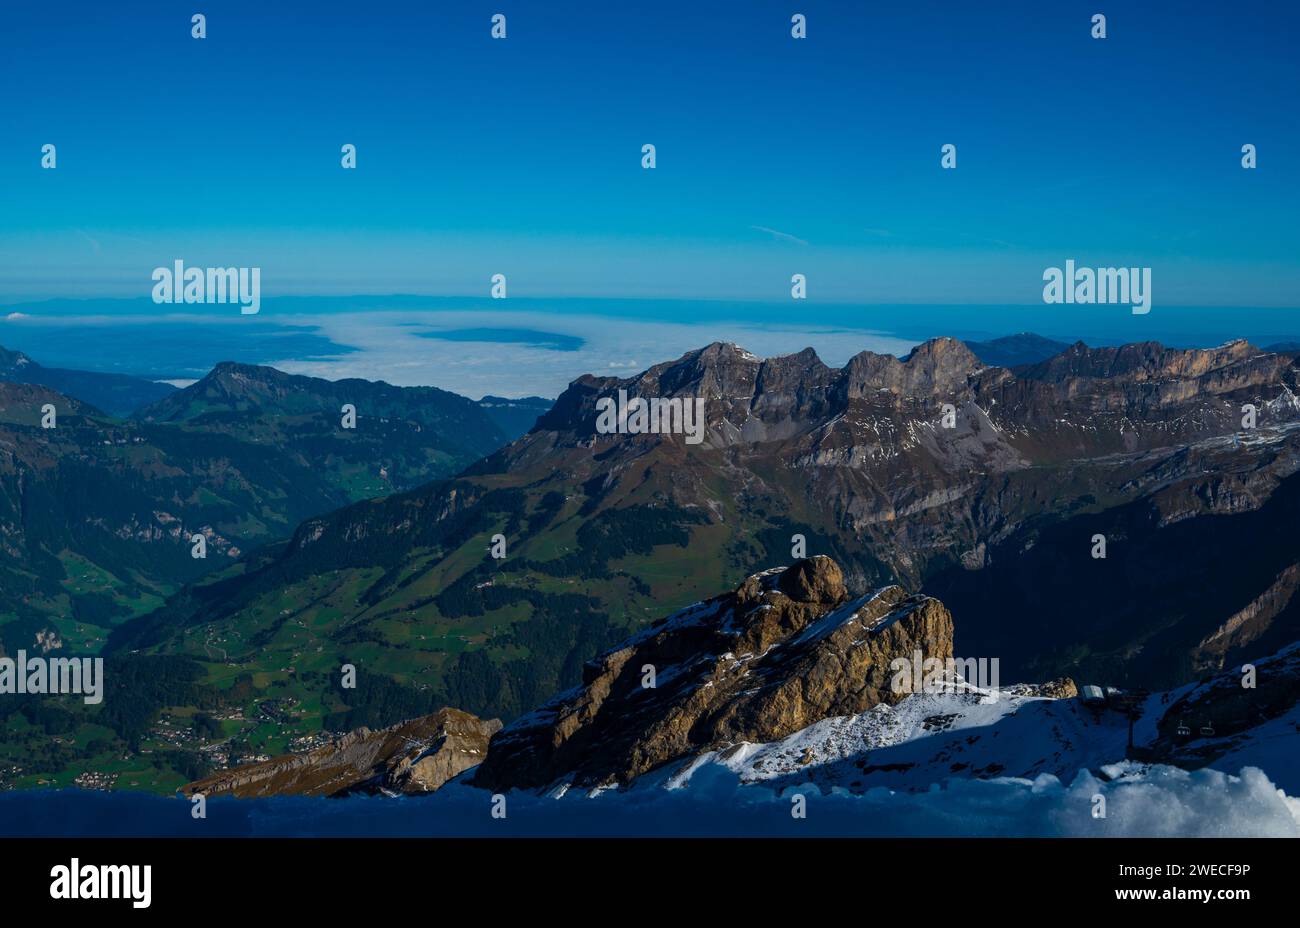 Monte Titlis, Lucerna, Svizzera: Le cime innevate e la bellezza alpina si fondono in un panorama mozzafiato. Foto Stock